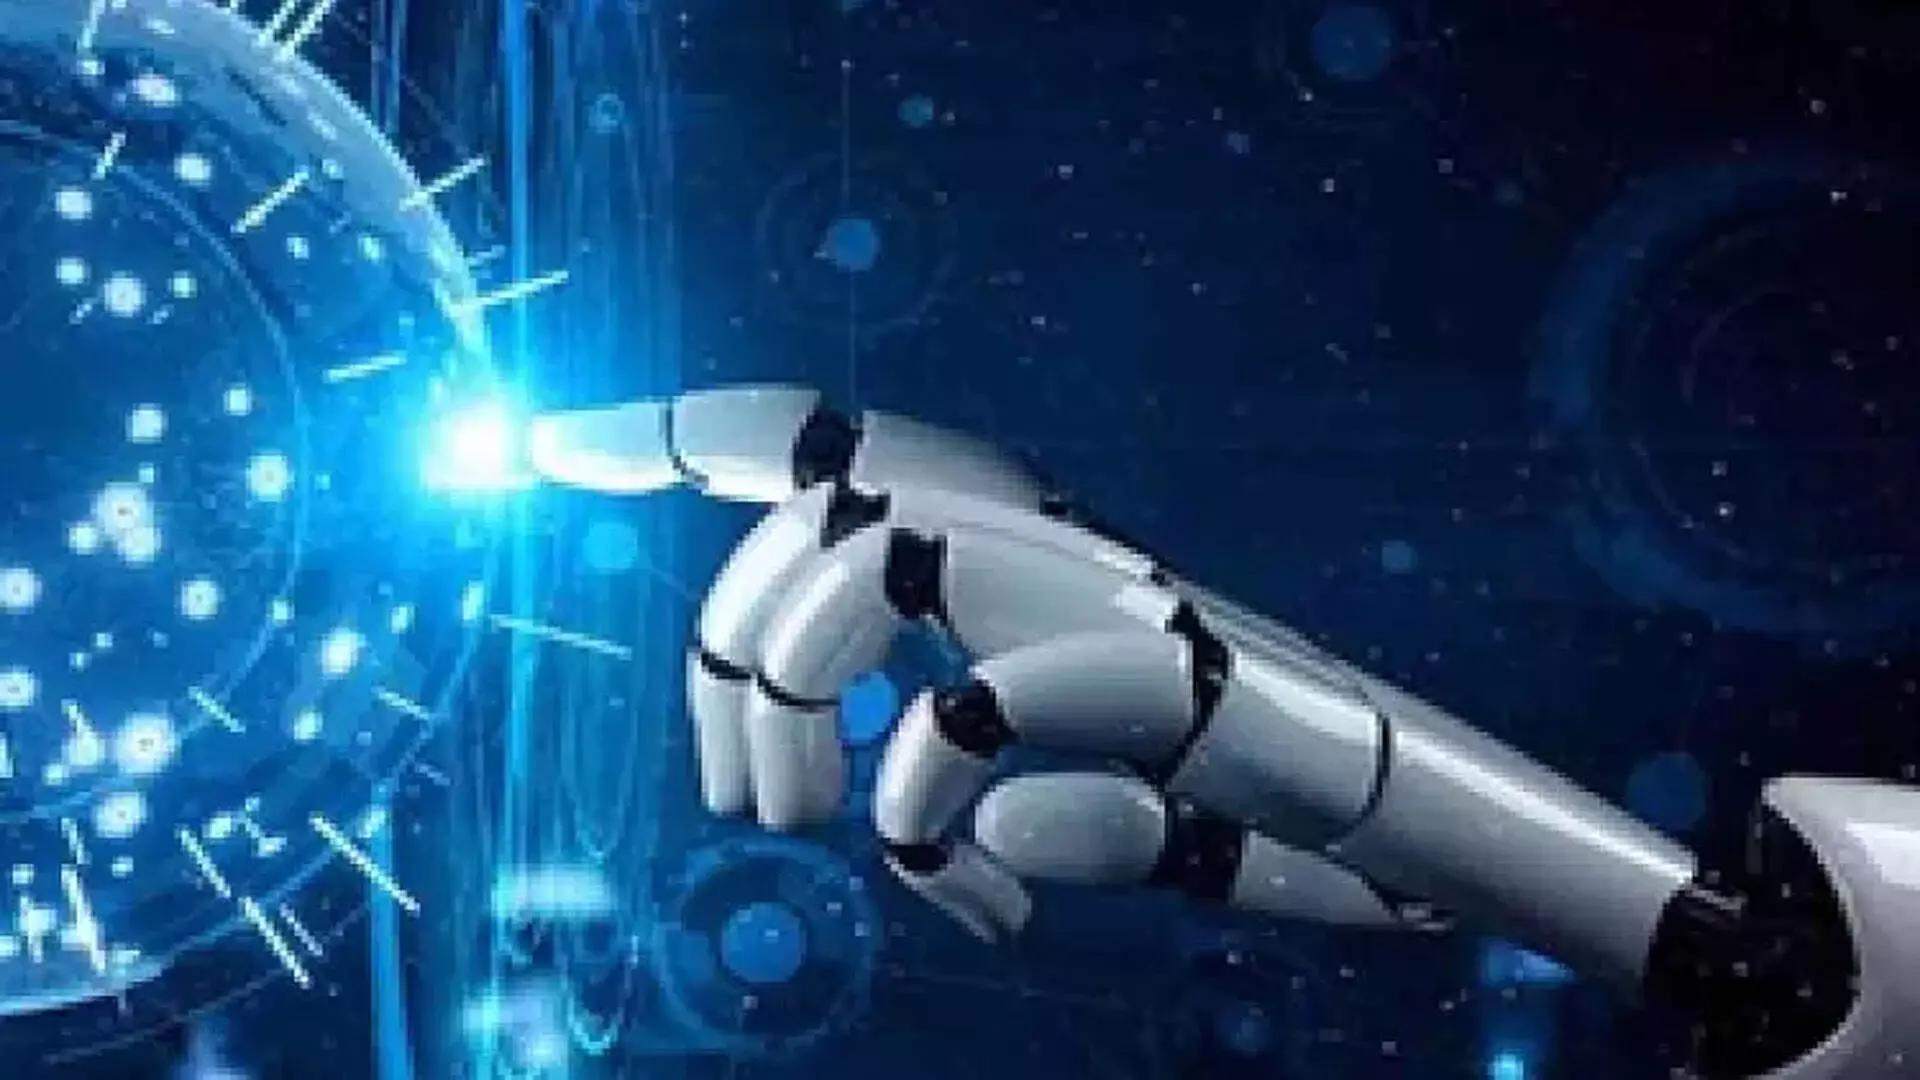 Robot-सहायता प्राप्त सर्जरी नवाचारों में वैश्विक कार्यक्रम ‘वट्टीकुटी एक्सप्लोरर्स’ के साथ शुरू